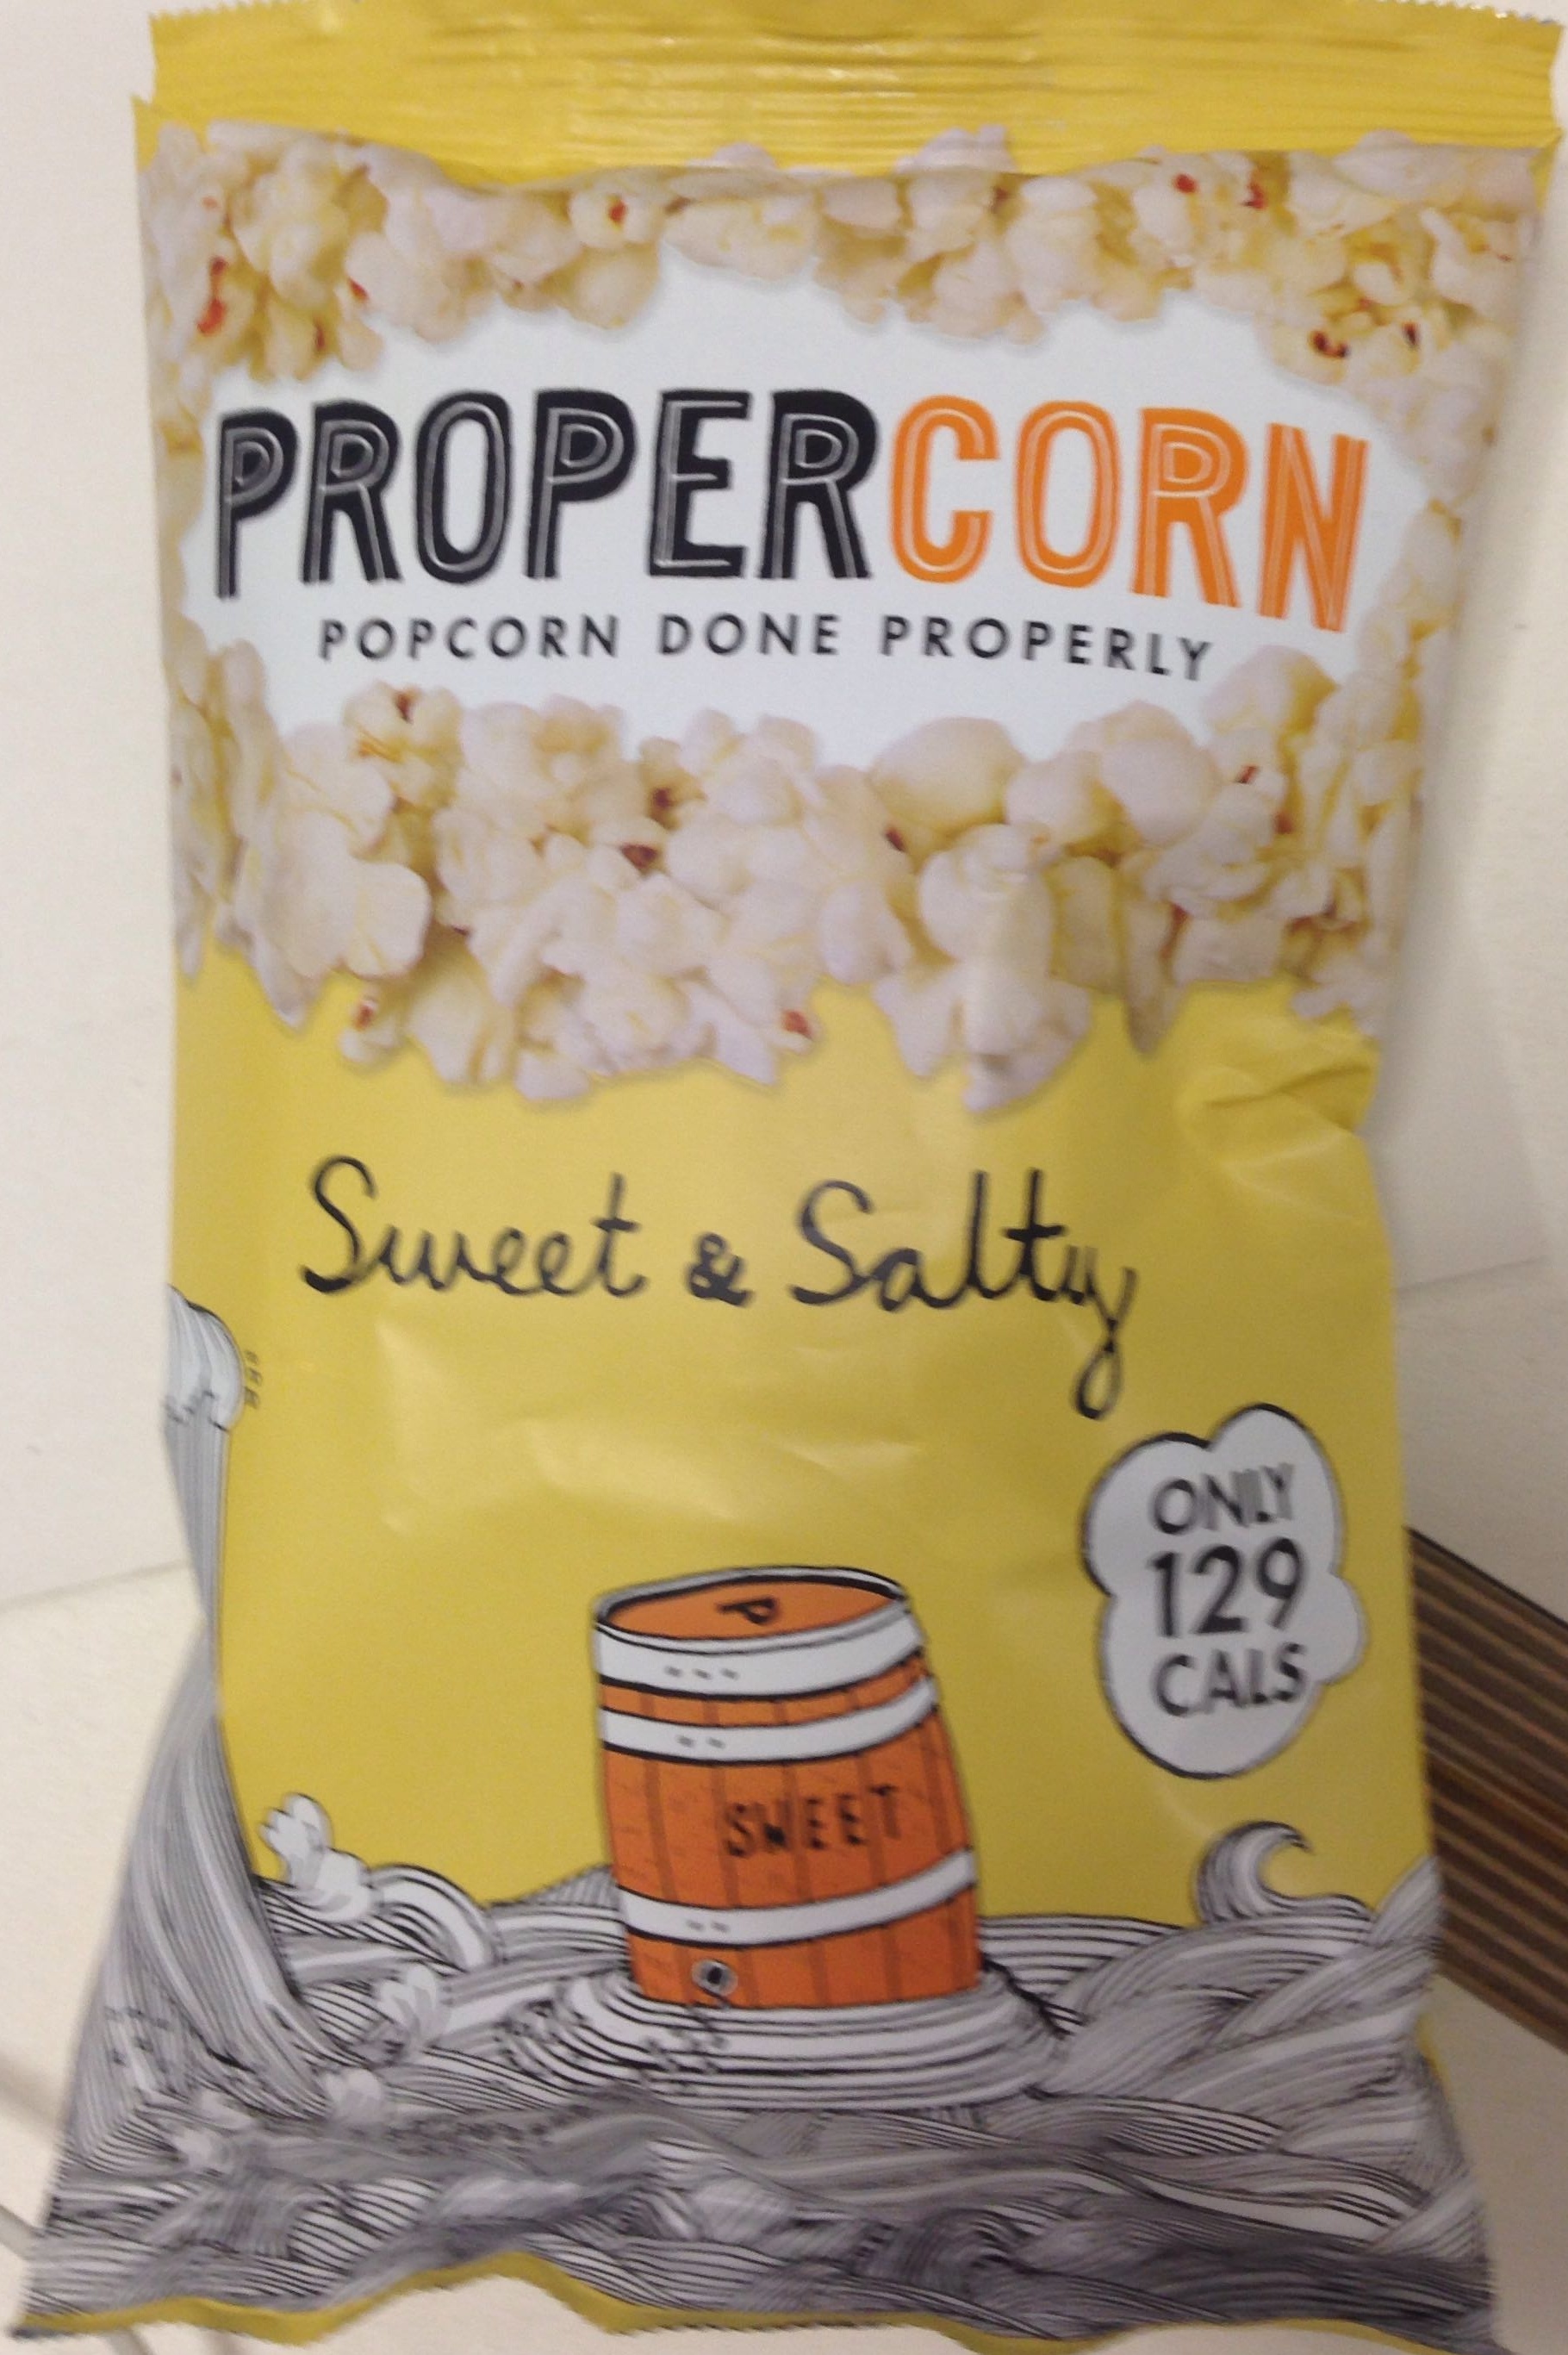 Sweet & Salty Popcorn - Product - en